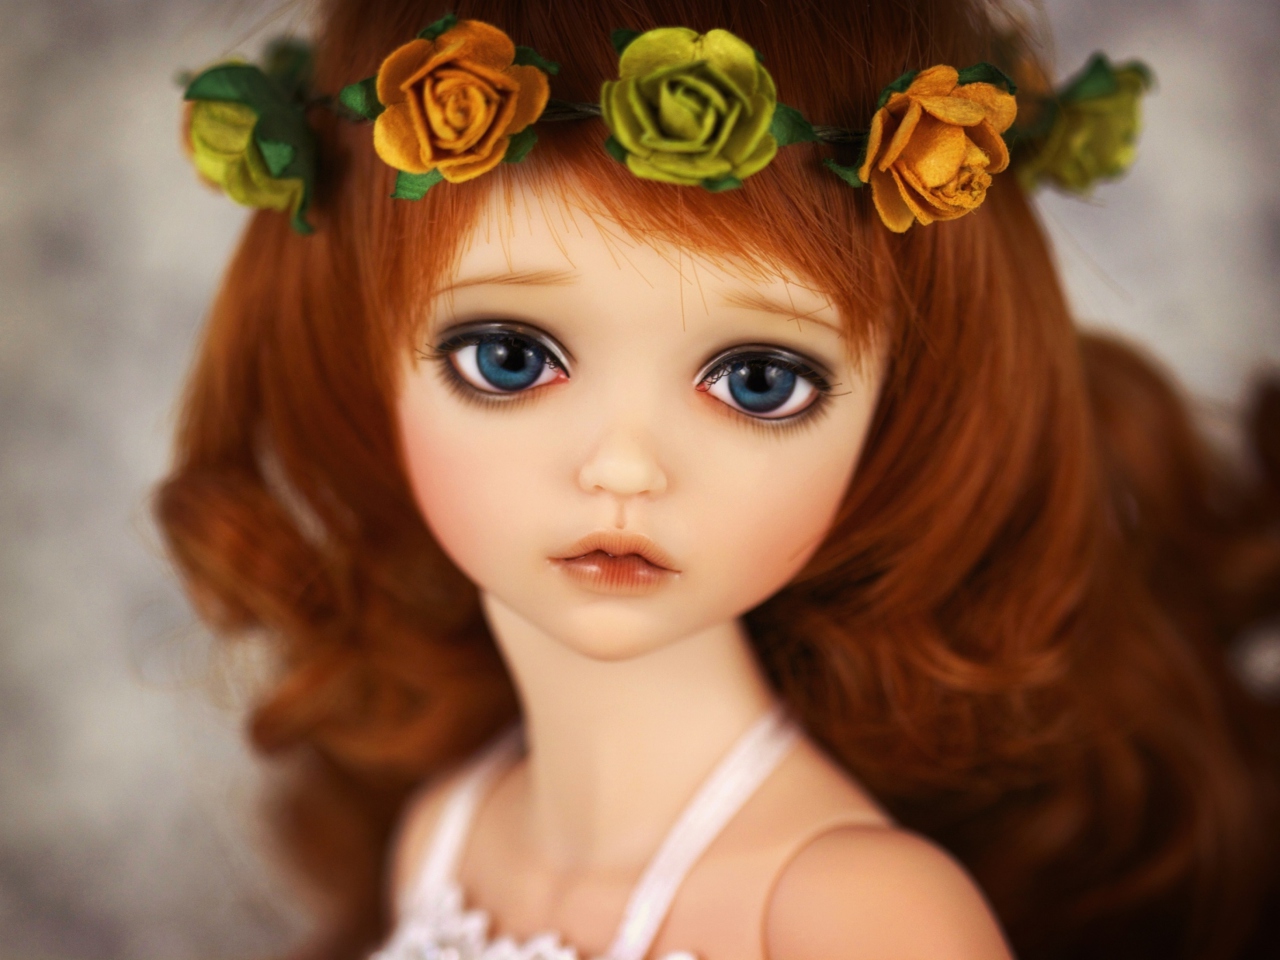 Обои Redhead Doll With Flower Crown 1280x960